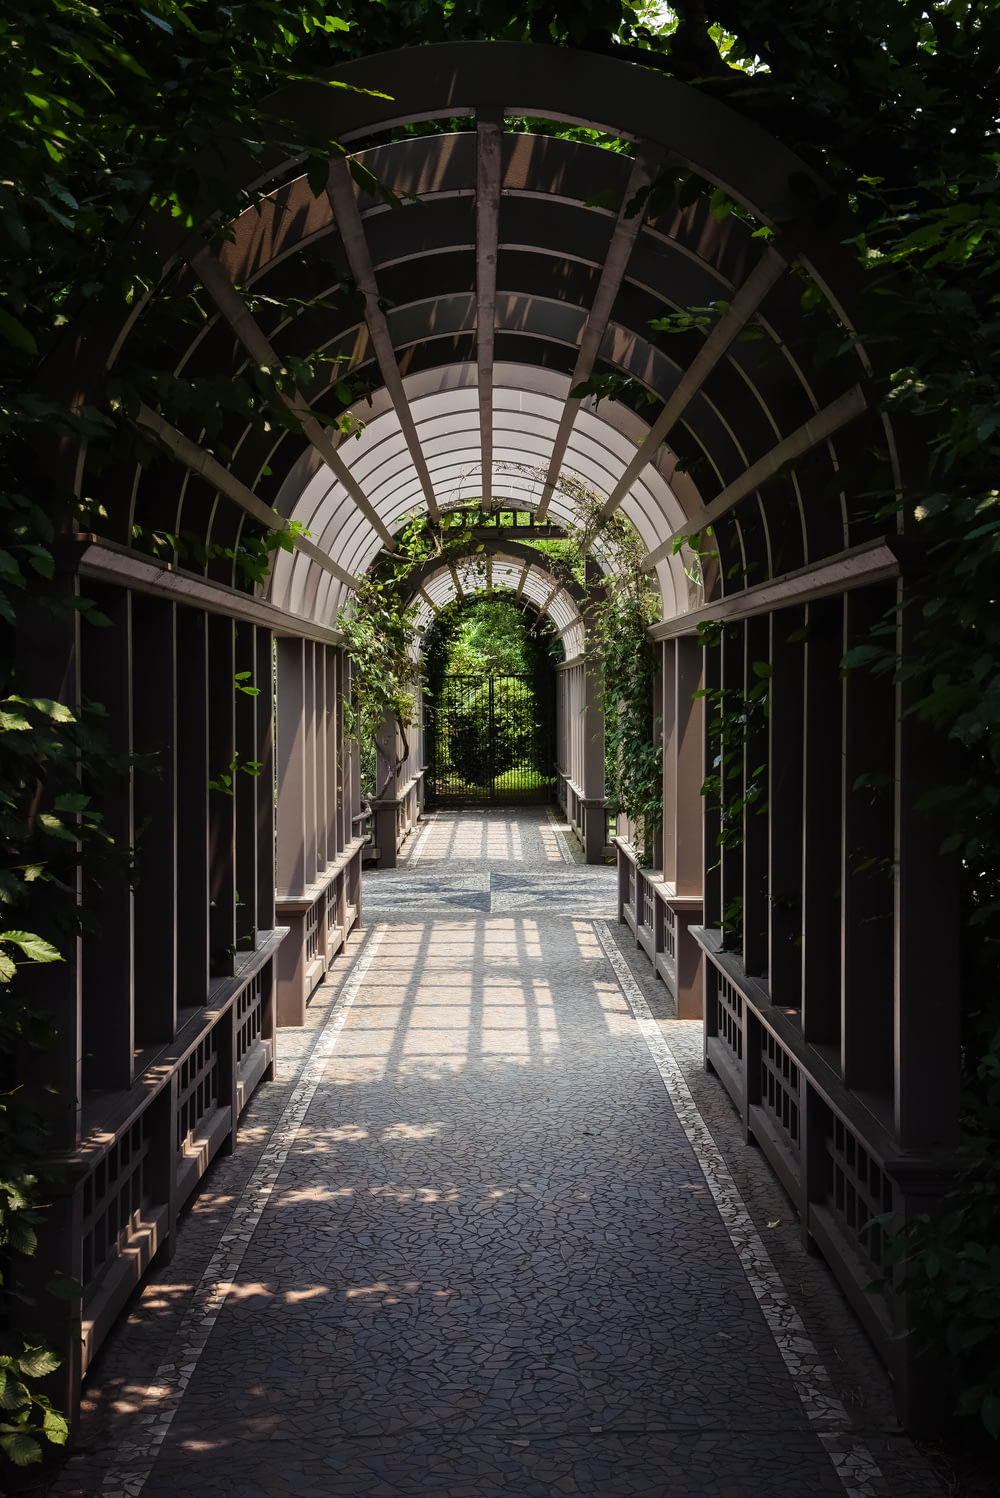 light through arch hallway under plants